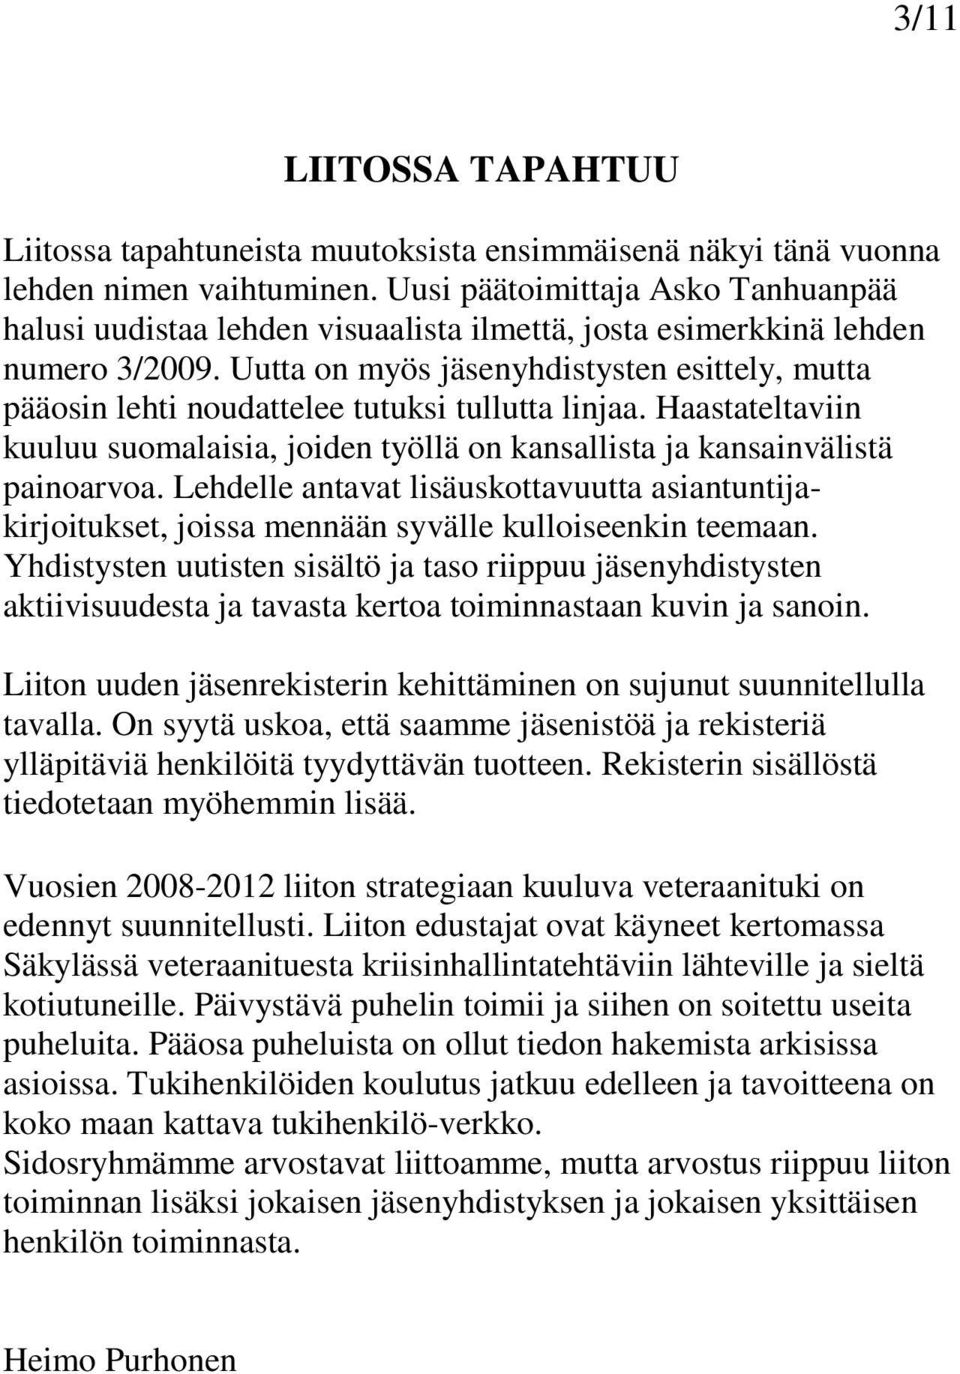 Uutta on myös jäsenyhdistysten esittely, mutta pääosin lehti noudattelee tutuksi tullutta linjaa. Haastateltaviin kuuluu suomalaisia, joiden työllä on kansallista ja kansainvälistä painoarvoa.